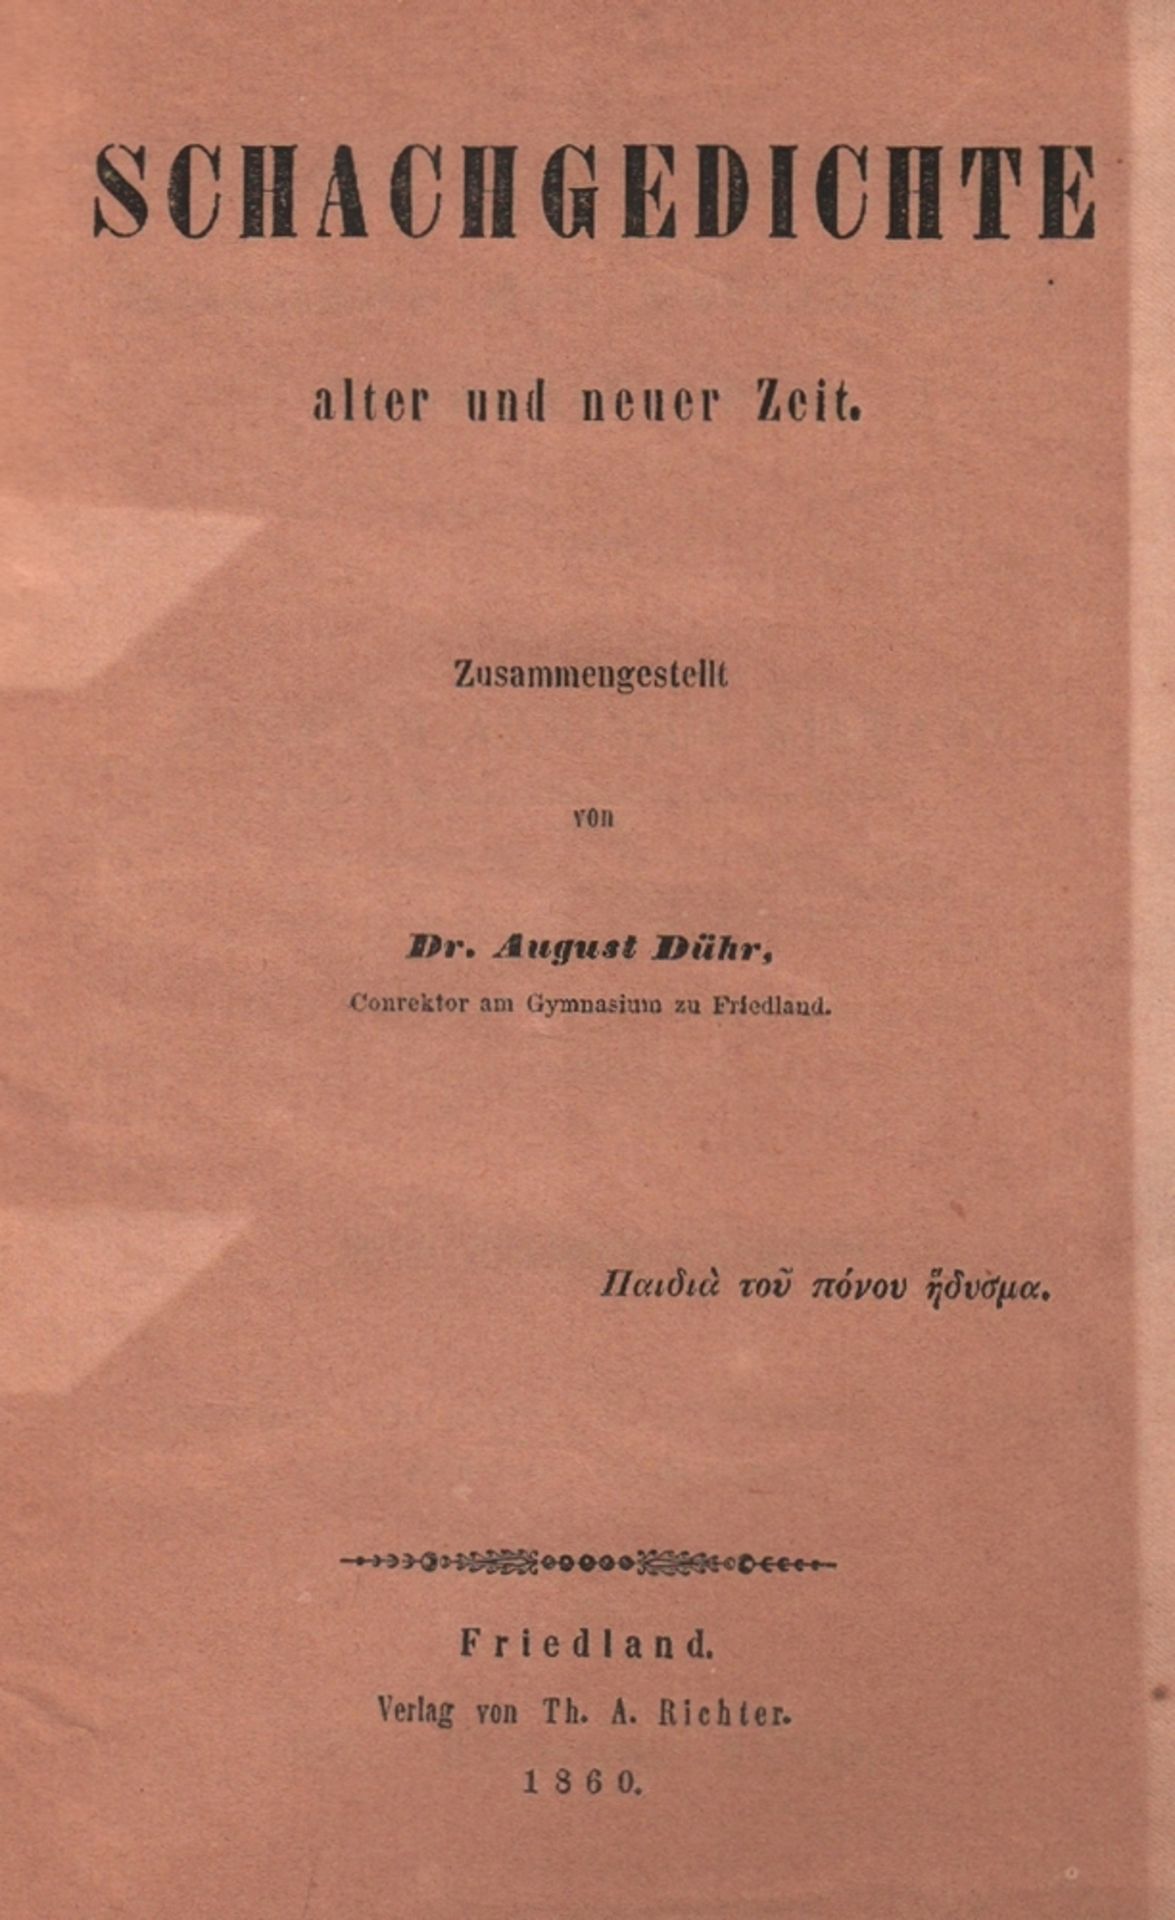 Dühr, August. Schachgedichte alter und neuer Zeit. Zusammengestellt. Friedland, Richter, 1860. 8°.